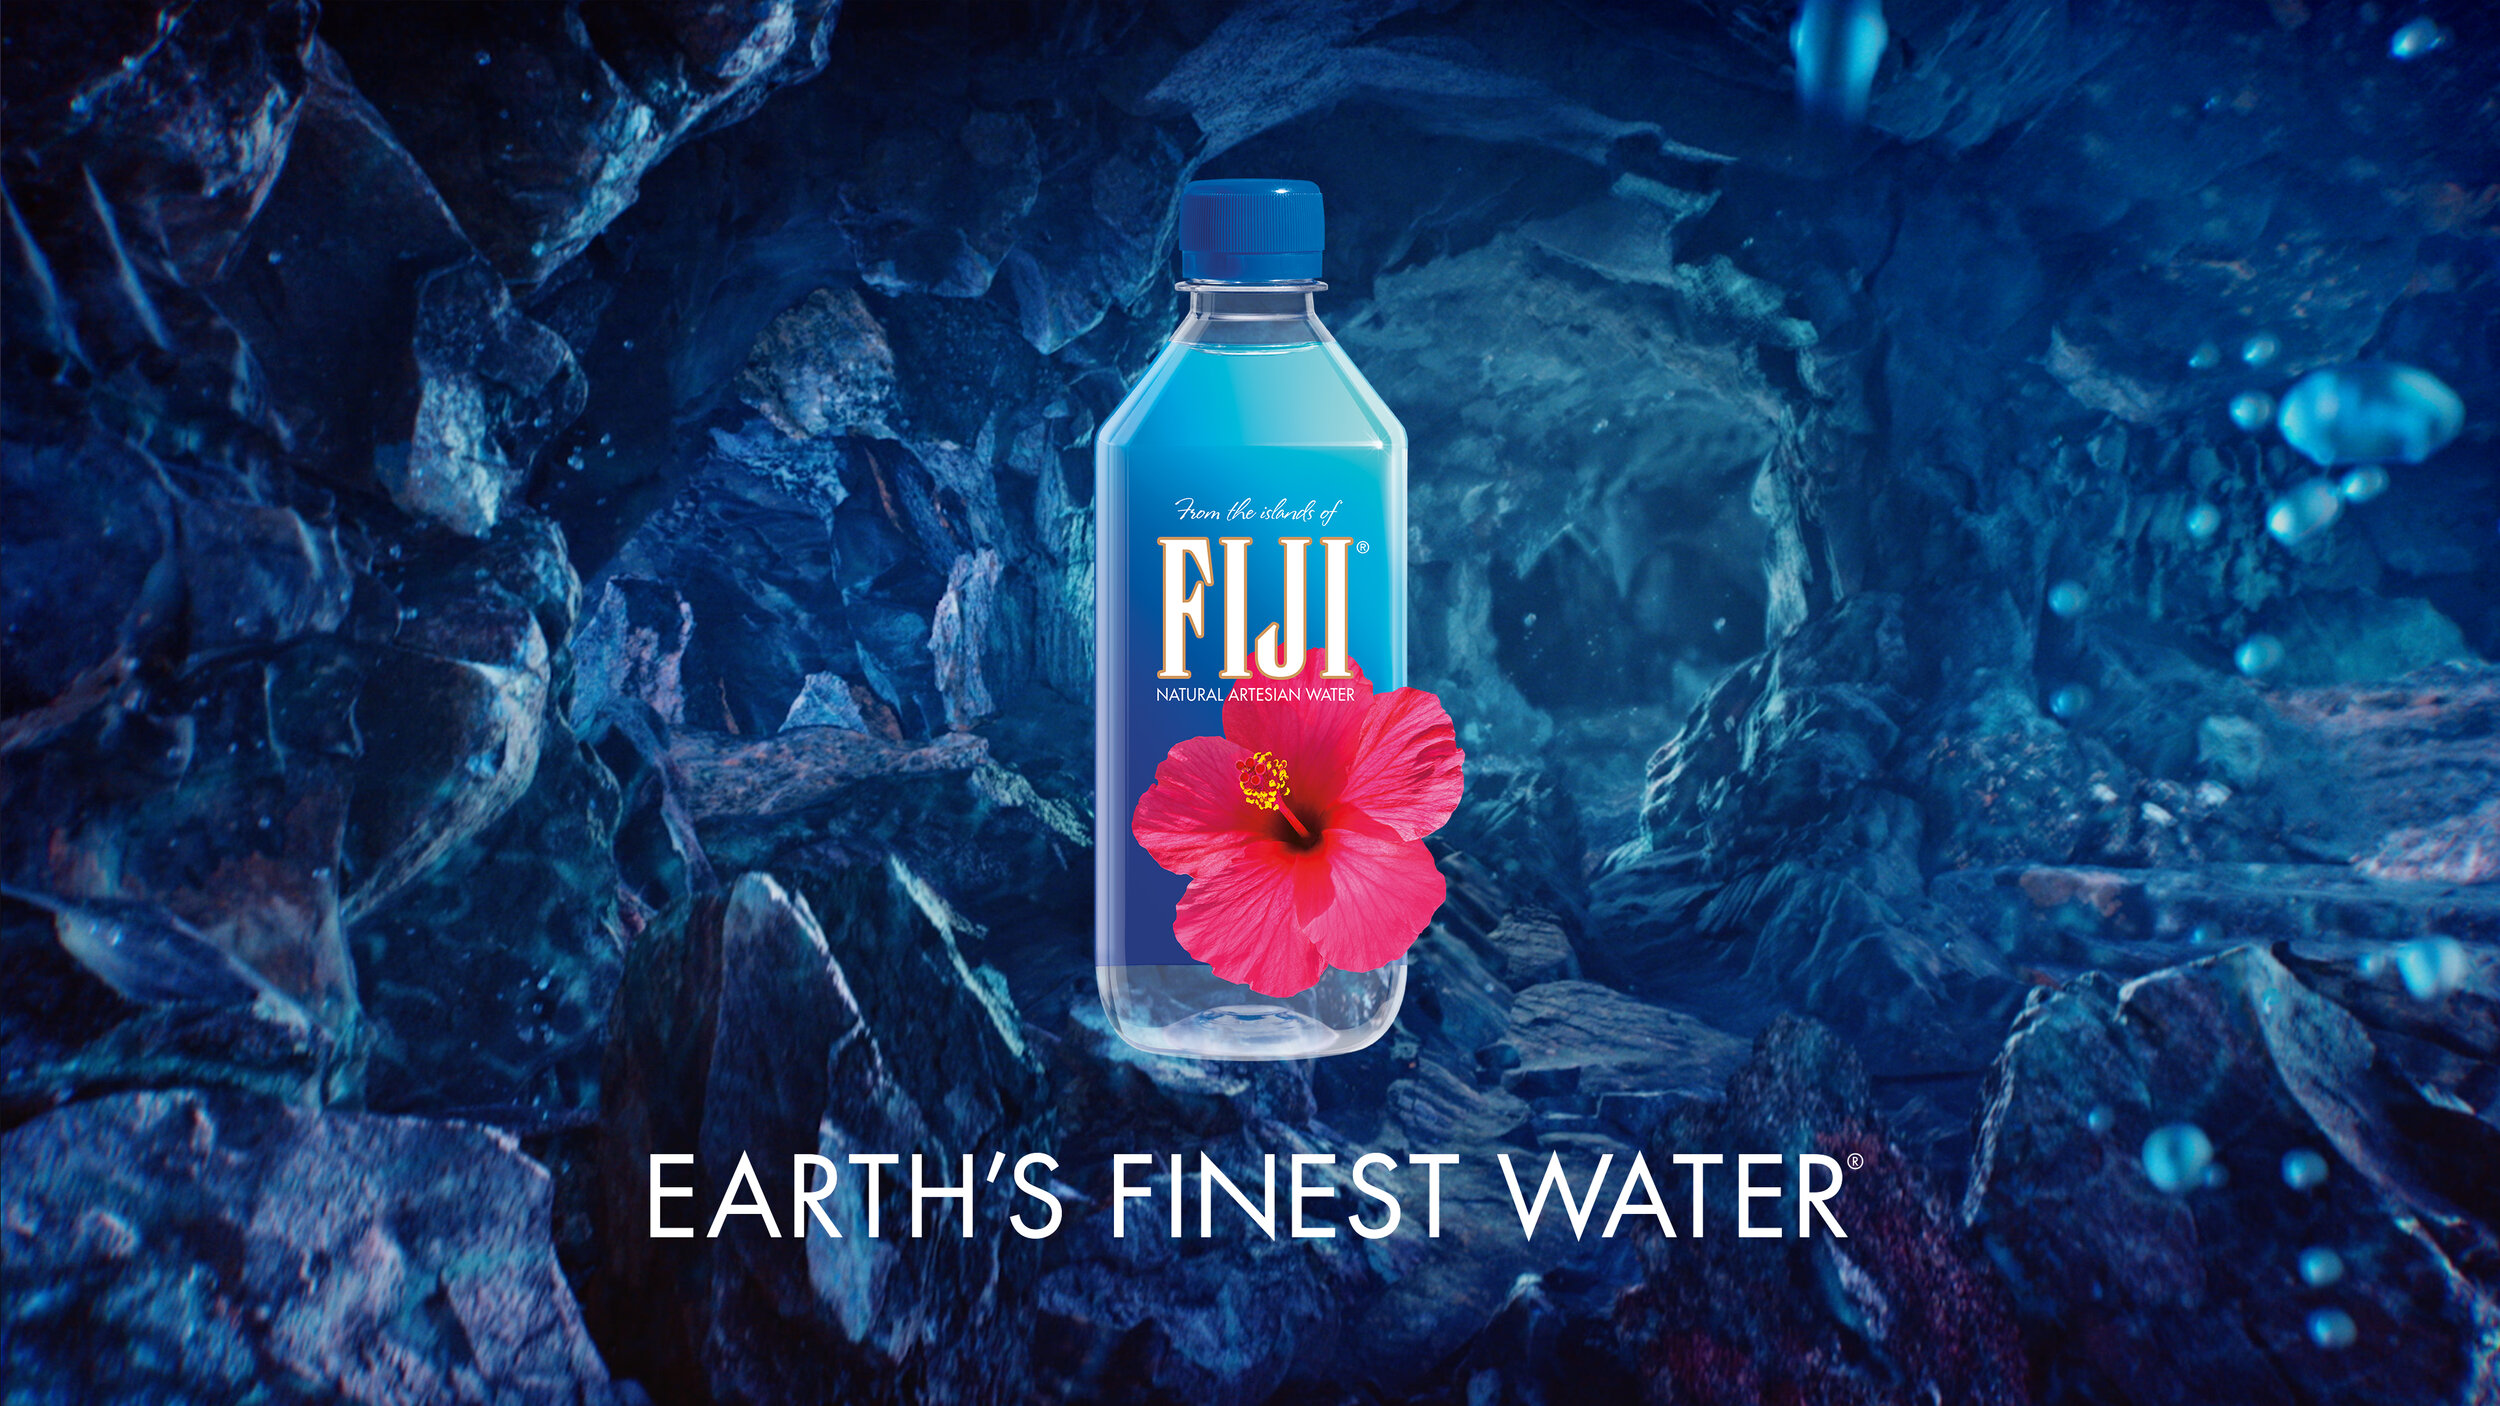 The water is fine chloe ament. Фиджи вода. Горная вода реклама. Вода Fine. Вода Fiji сохры.